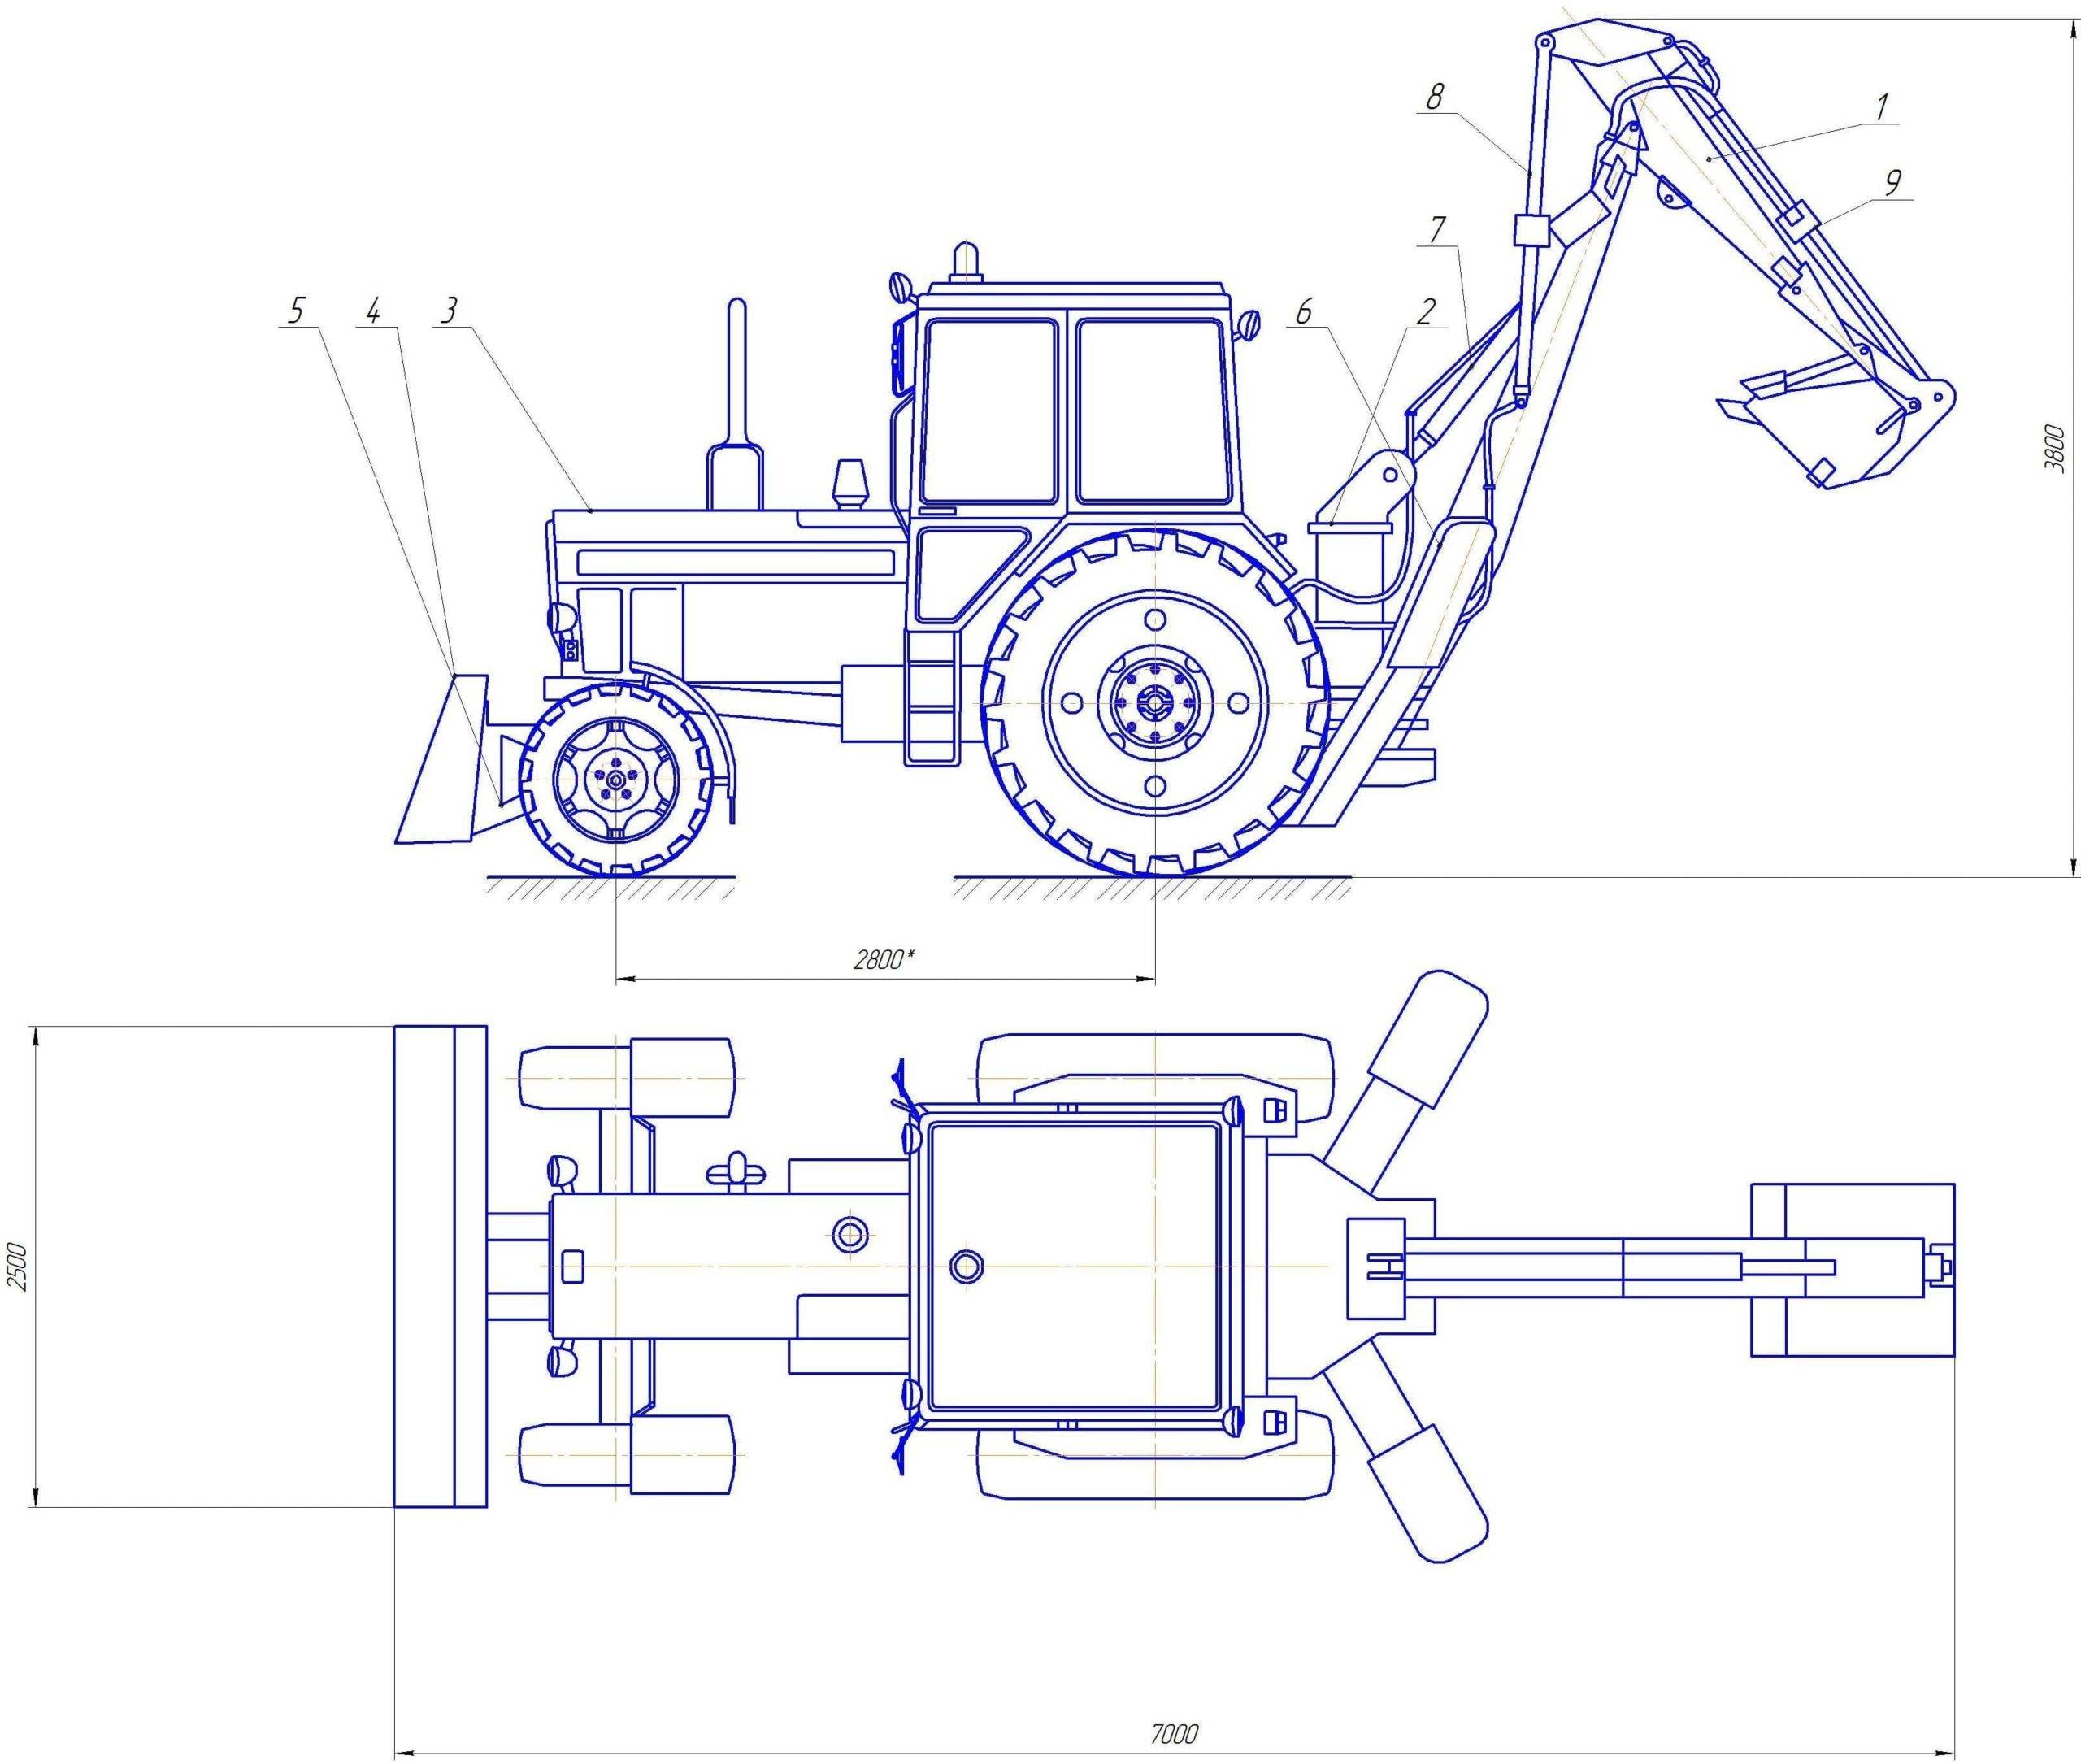 Экскаватор эо-2621: технические характеристики нового трактора и погрузчика юмз